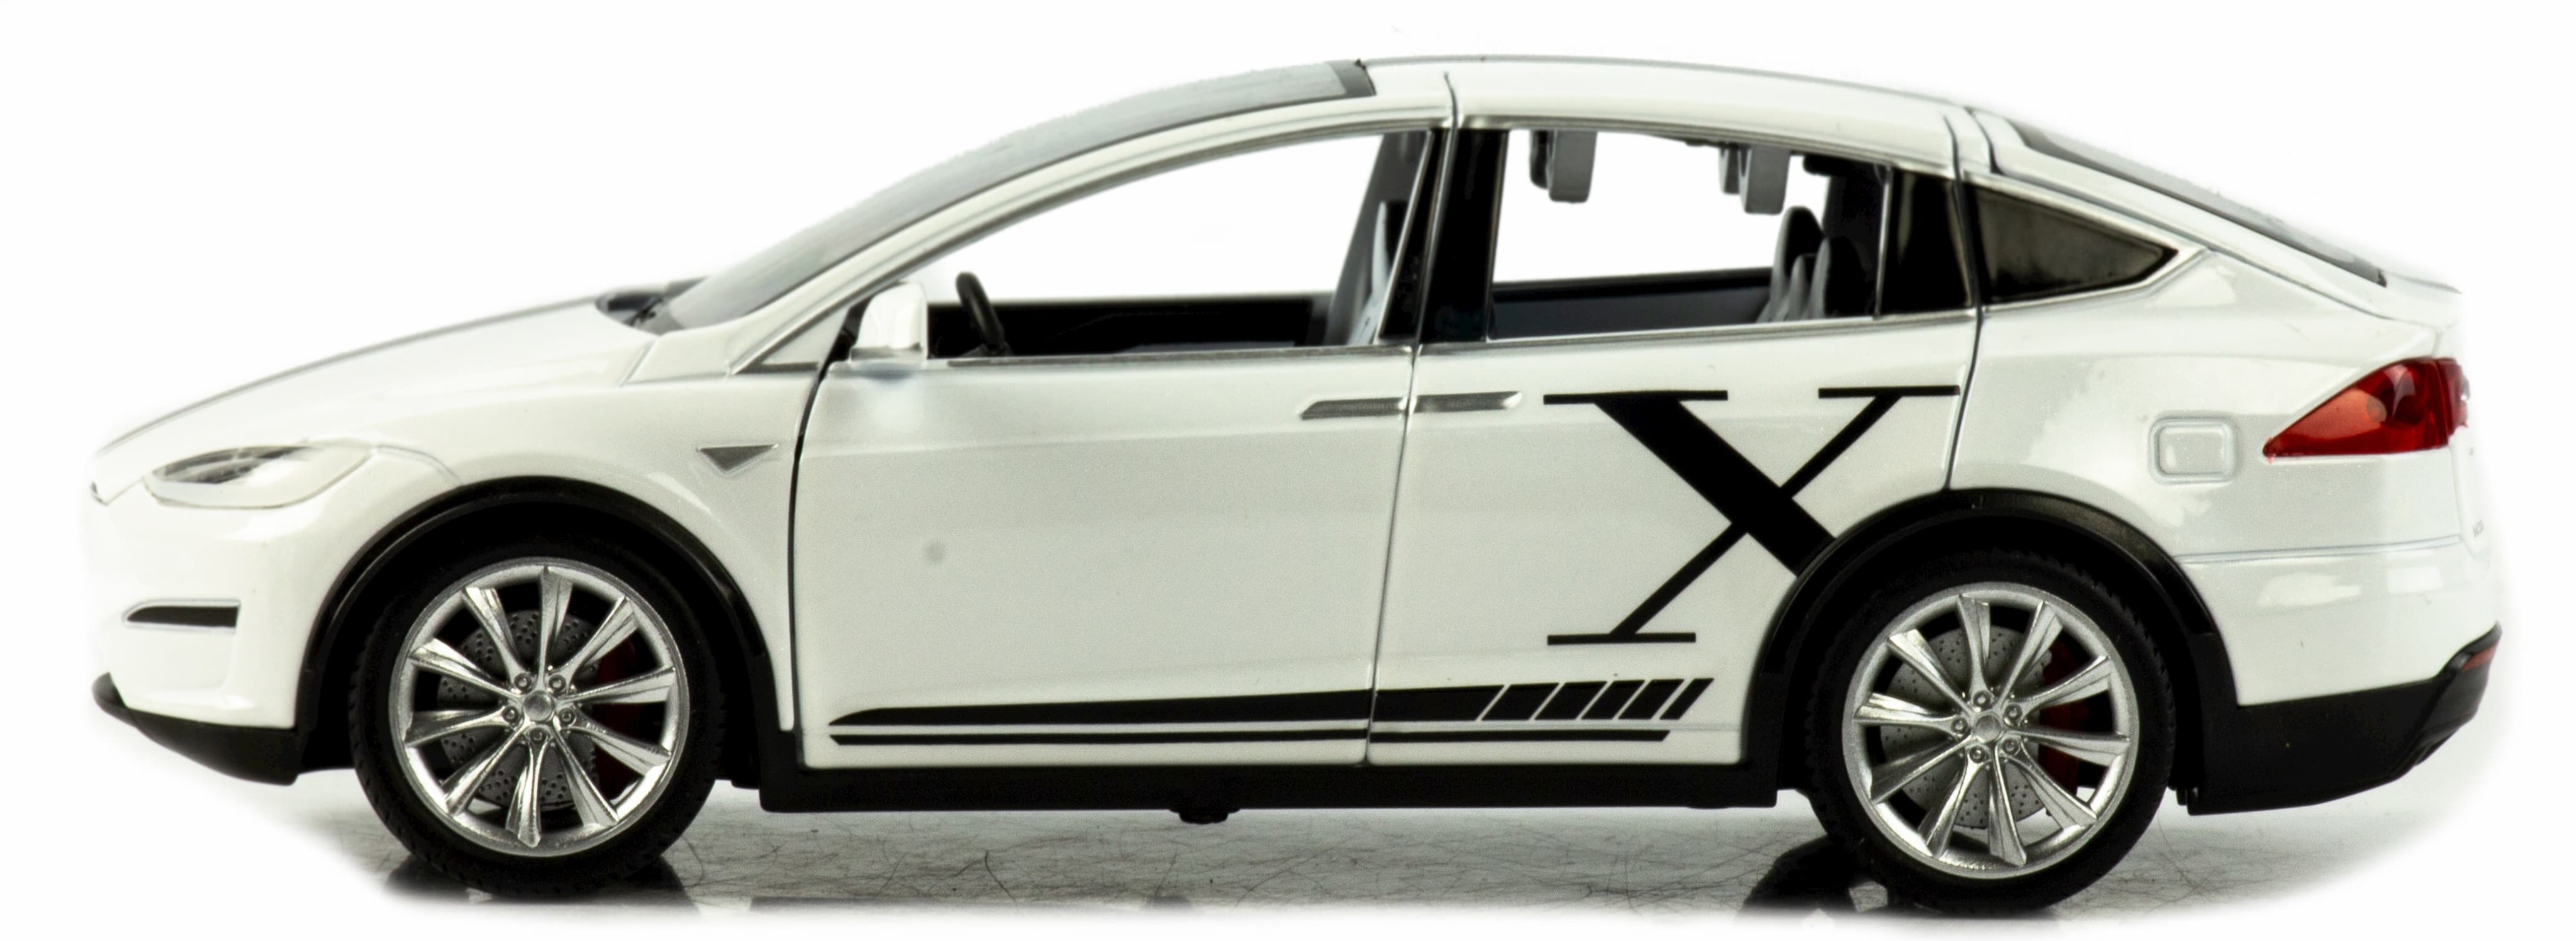 Металлическая машинка MiniAuto 1:24 «Tesla Model X» 2403B, 21 см., инерционная, свет, звук / Белый